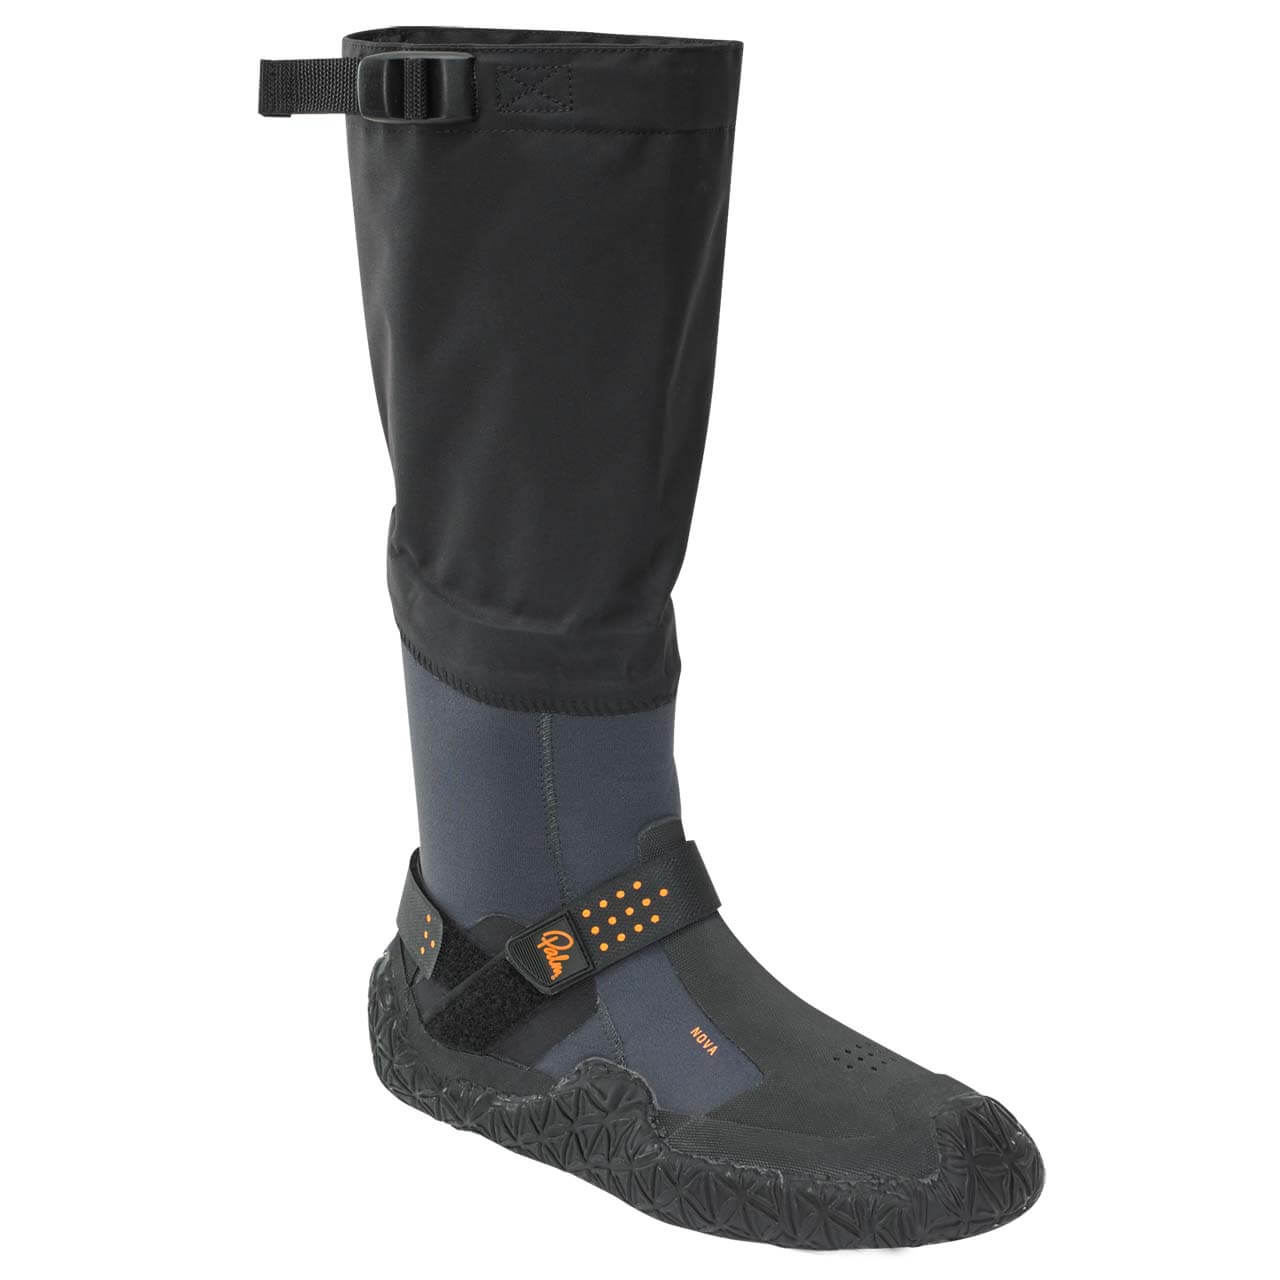 Palm Nova Boots - Jet Grey, UK 12